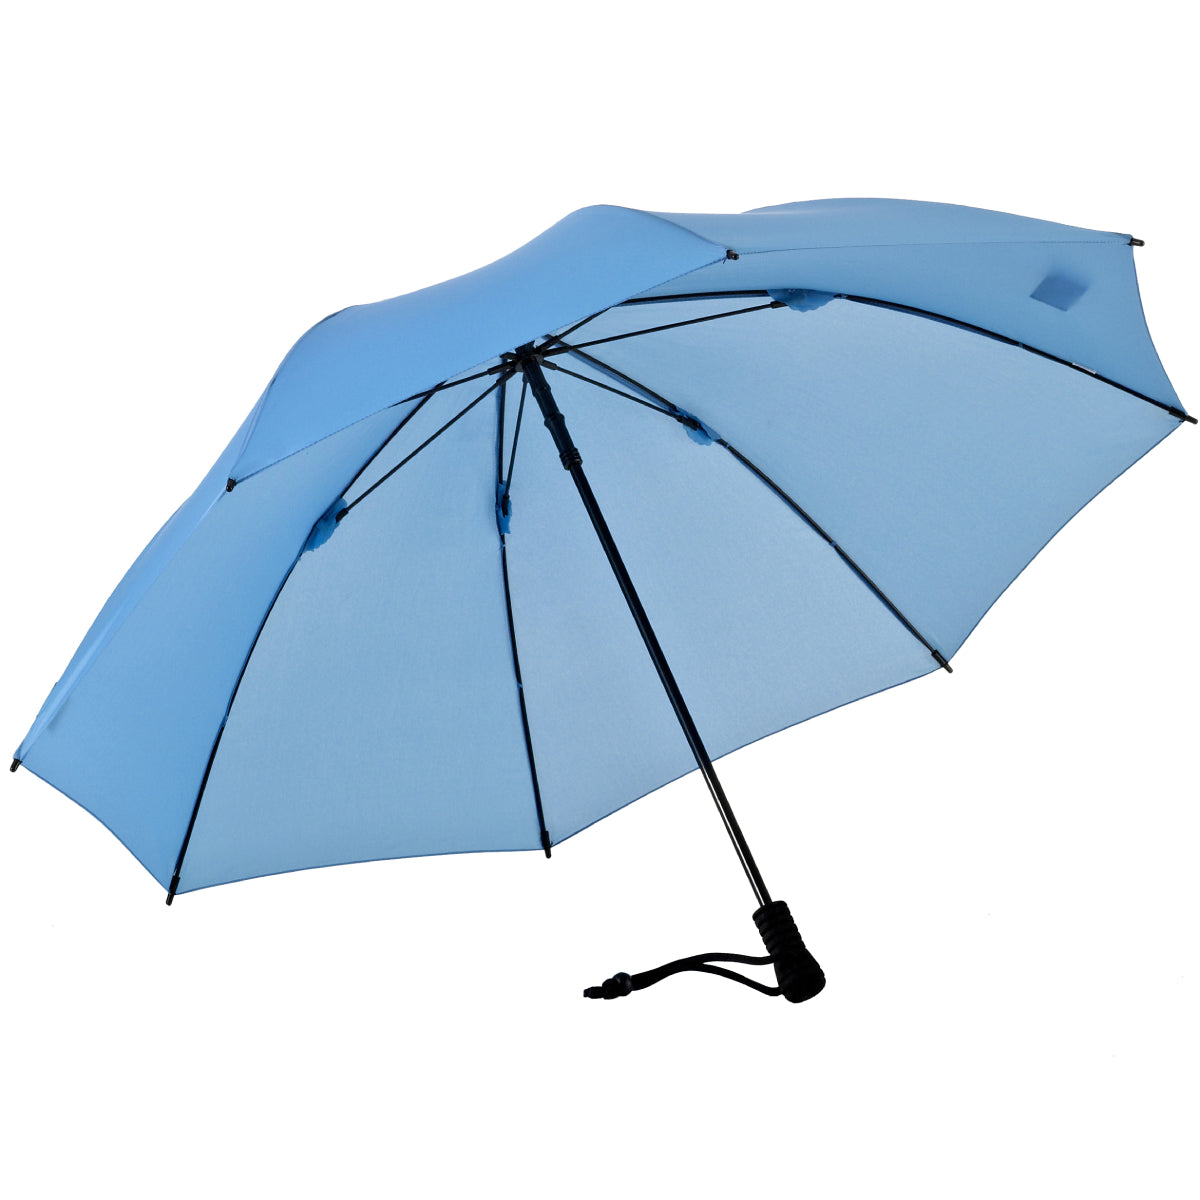 EuroSCHIRM Swing Liteflex Umbrella – EuroSCHIRM USA